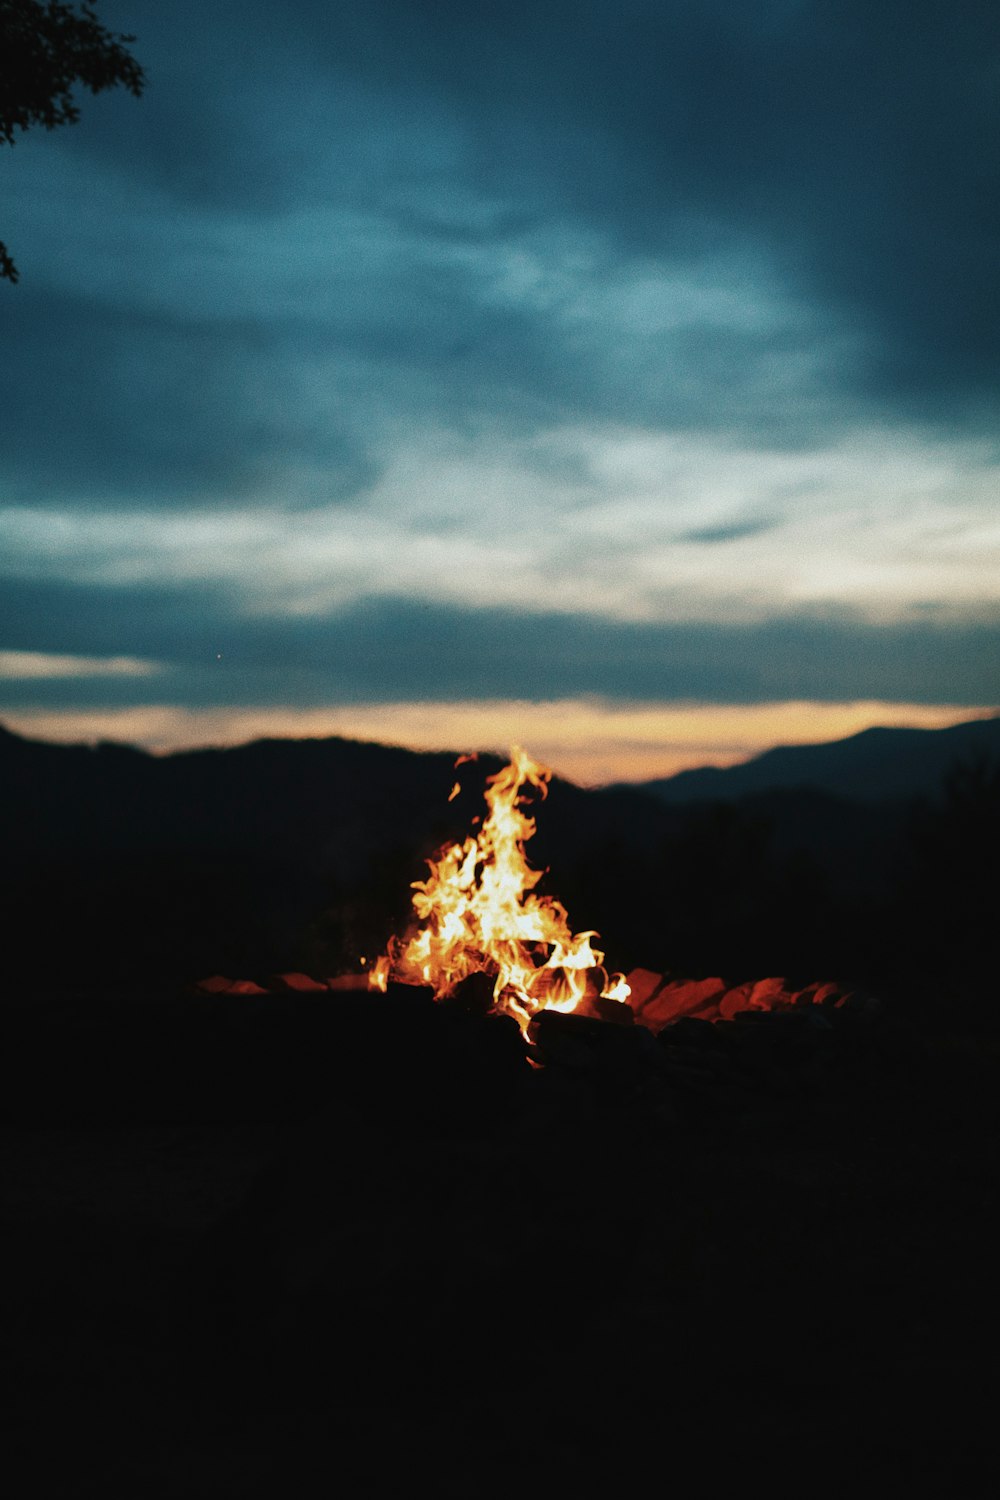 fotografia de fogueira durante a noite